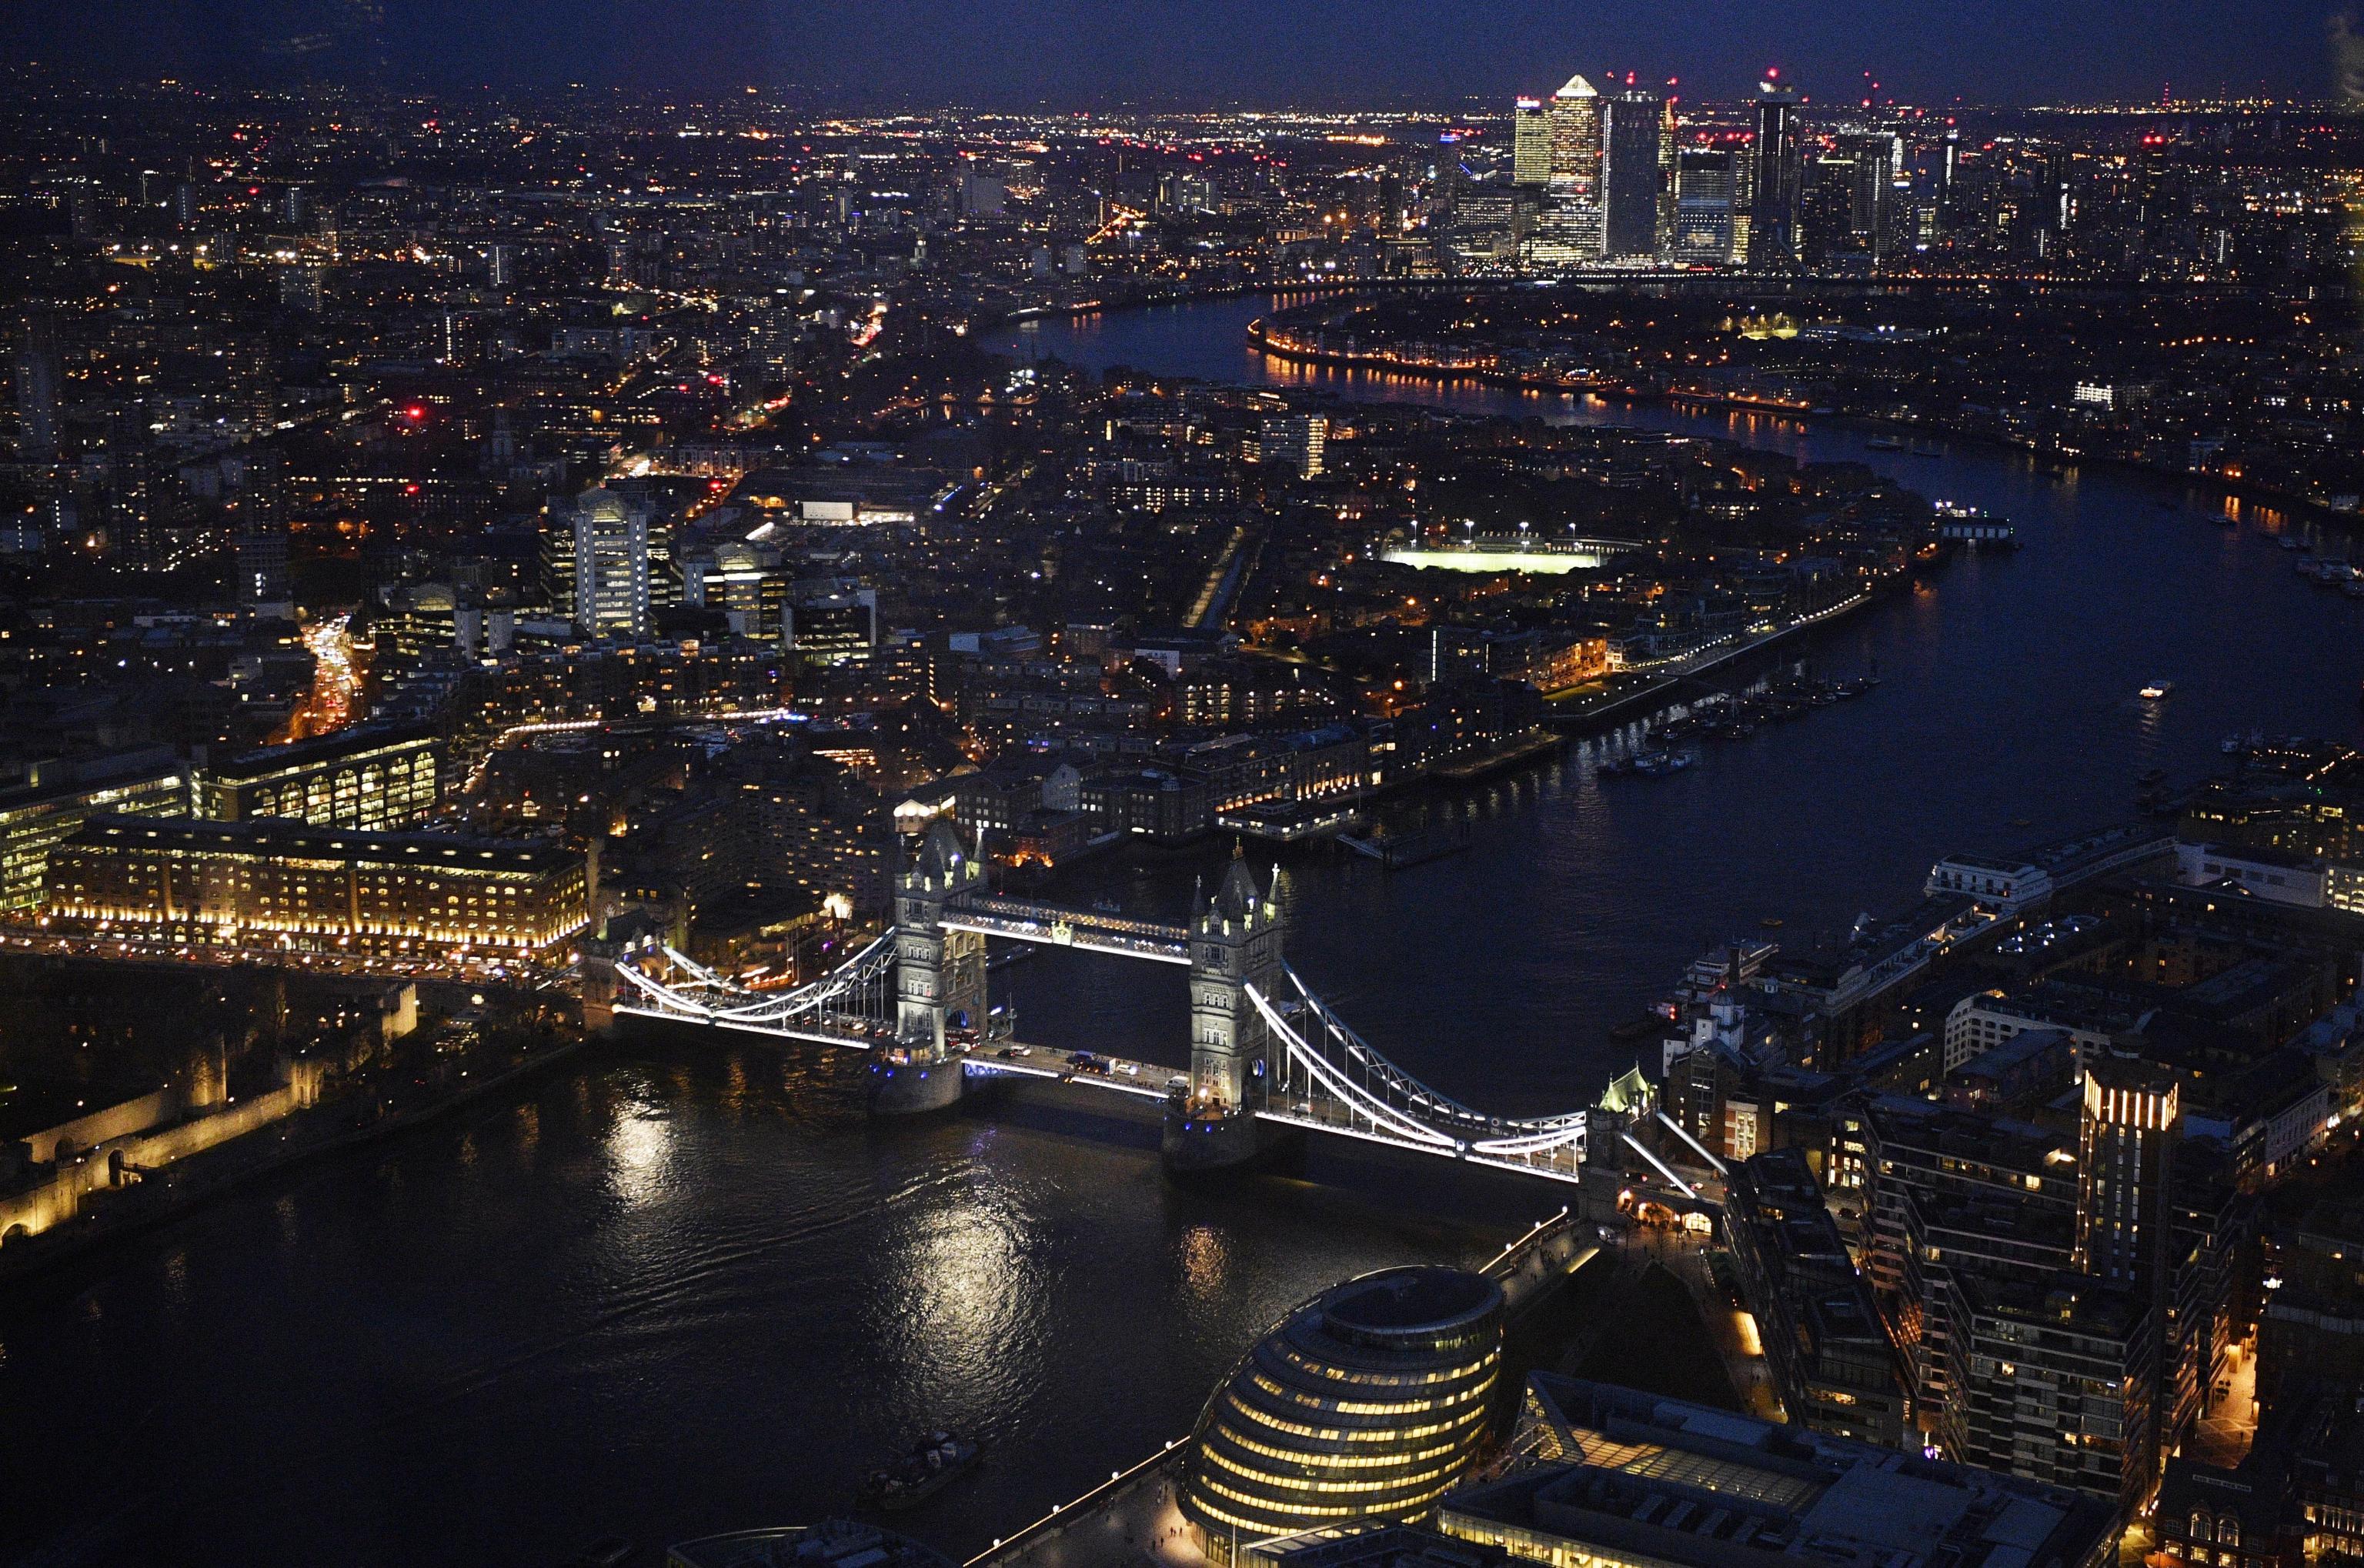 Luoghi storici, incluso il Tower Bridge, la Tower of London e Canary Wharf sono illuminati la notte a Londra.